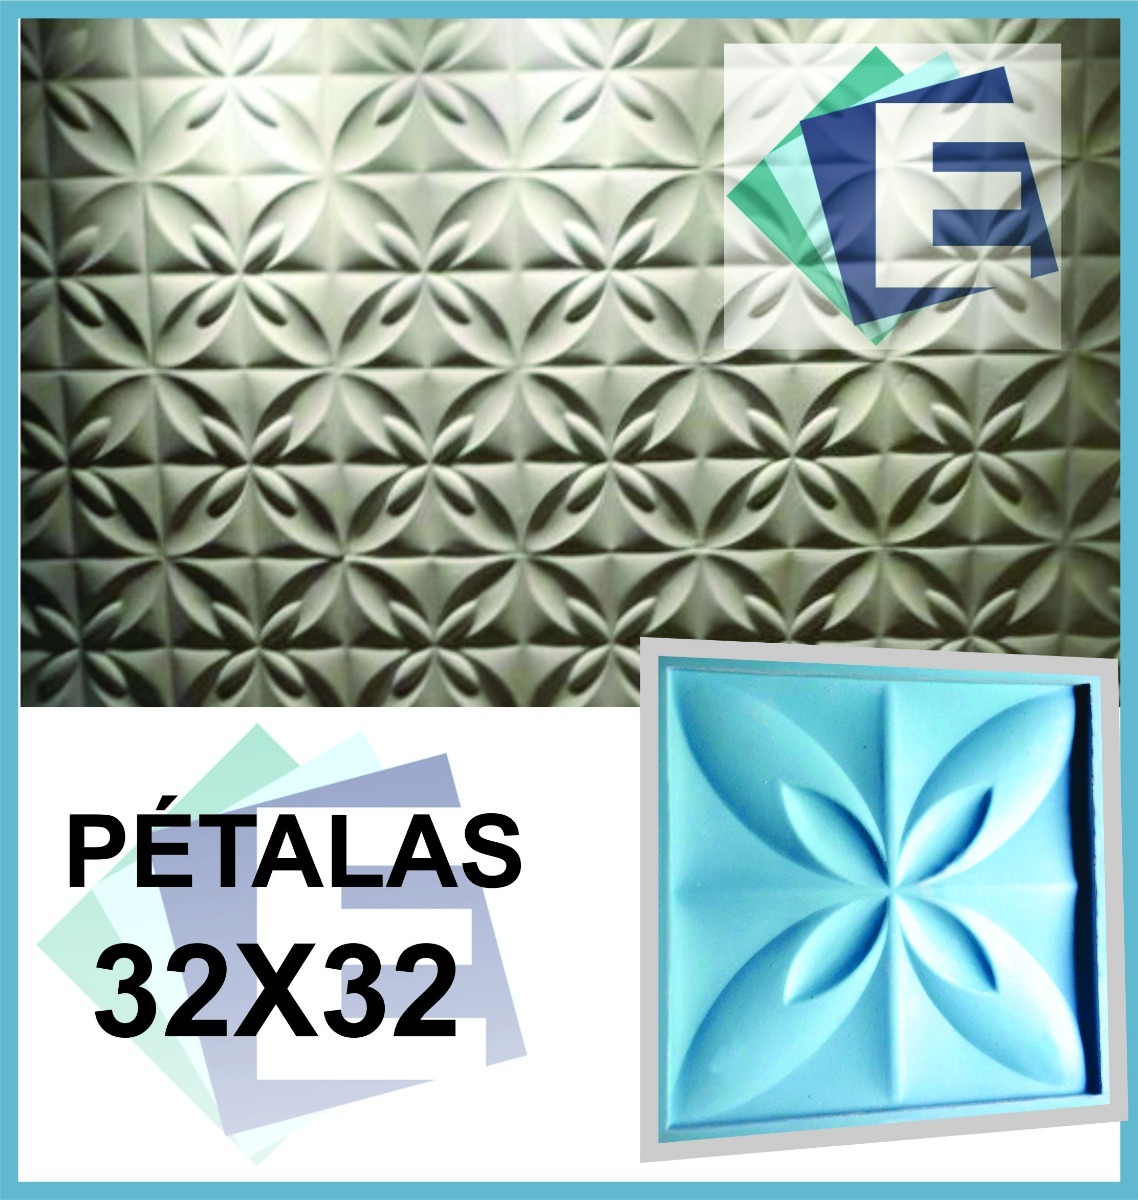 Forma De Silicone Gesso 3d Petalas 32x32 Frete Gratis R 119 99